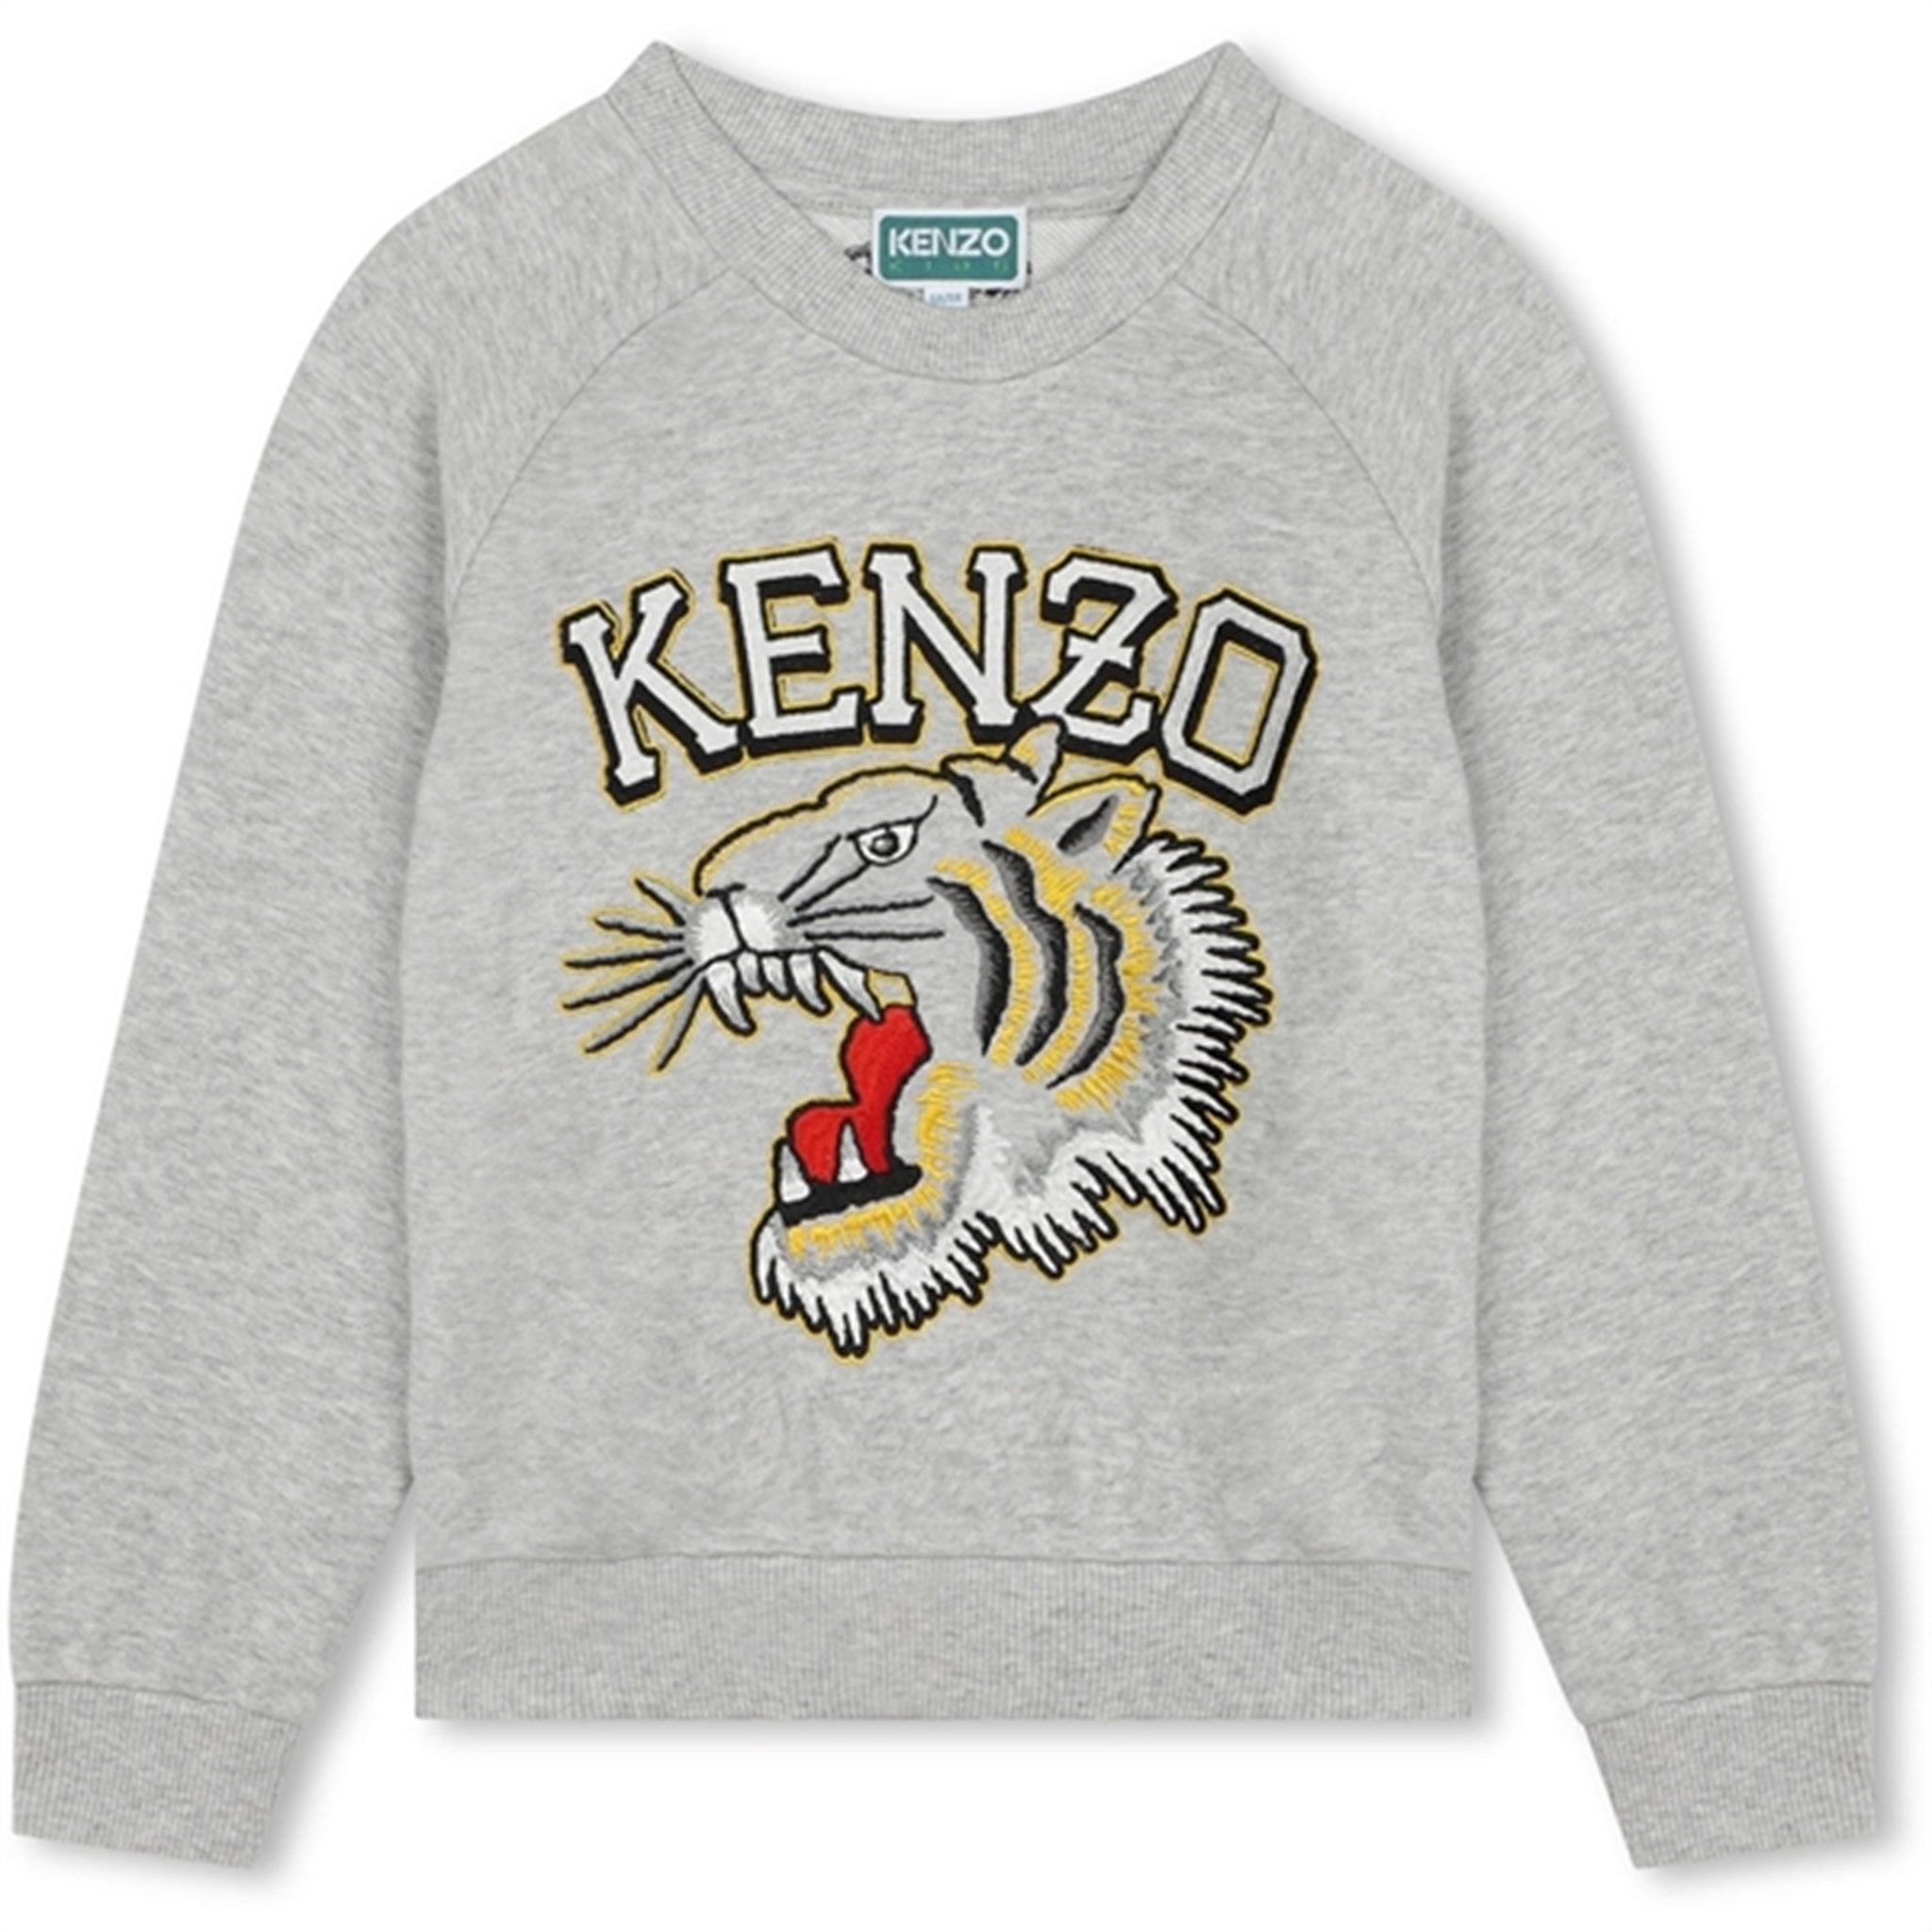 Kenzo Grey Marl Sweatshirt